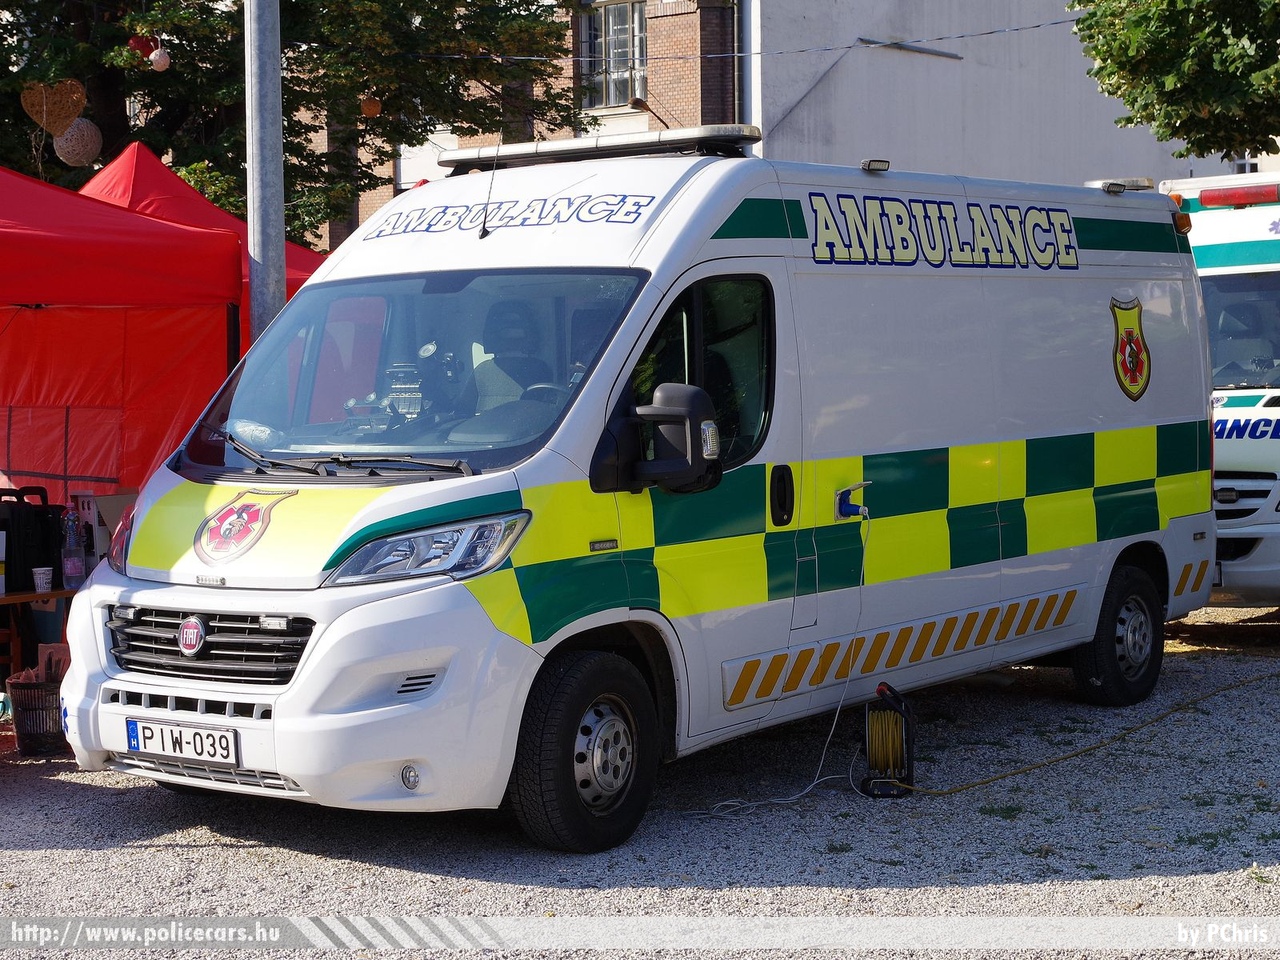 Fiat Ducato, Inter-Ambulance Zrt., fotó: PChris
Keywords: mentő mentőautó magyar Magyarország hungarian Hungary ambulance PIW-039